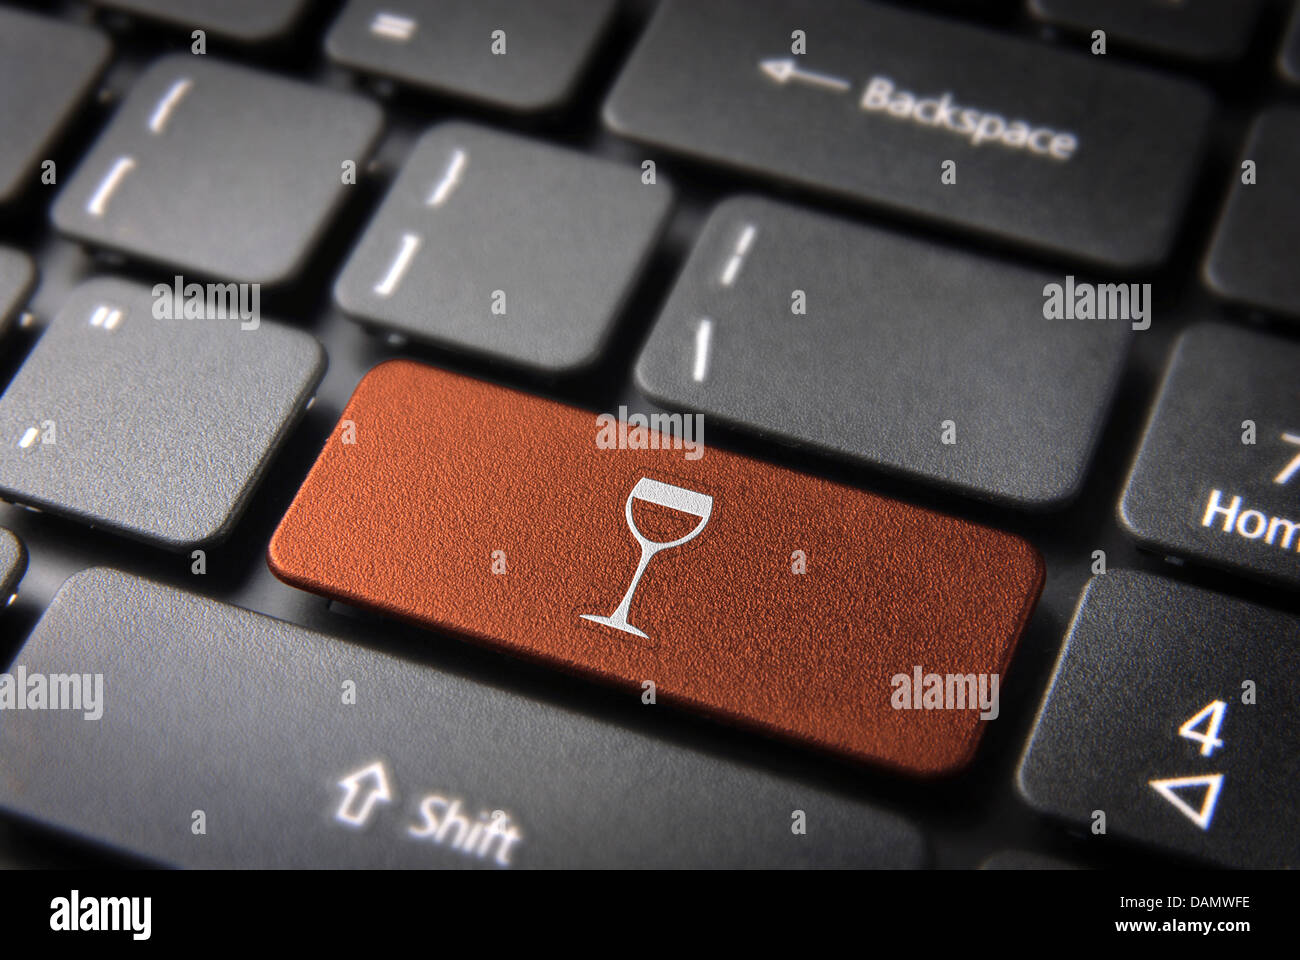 Essen-Schlüssel mit Weinglas Symbol auf Laptop-Tastatur. Im Preis inbegriffen Clipping-Pfad, so dass Sie leicht bearbeitet werden kann. Stockfoto